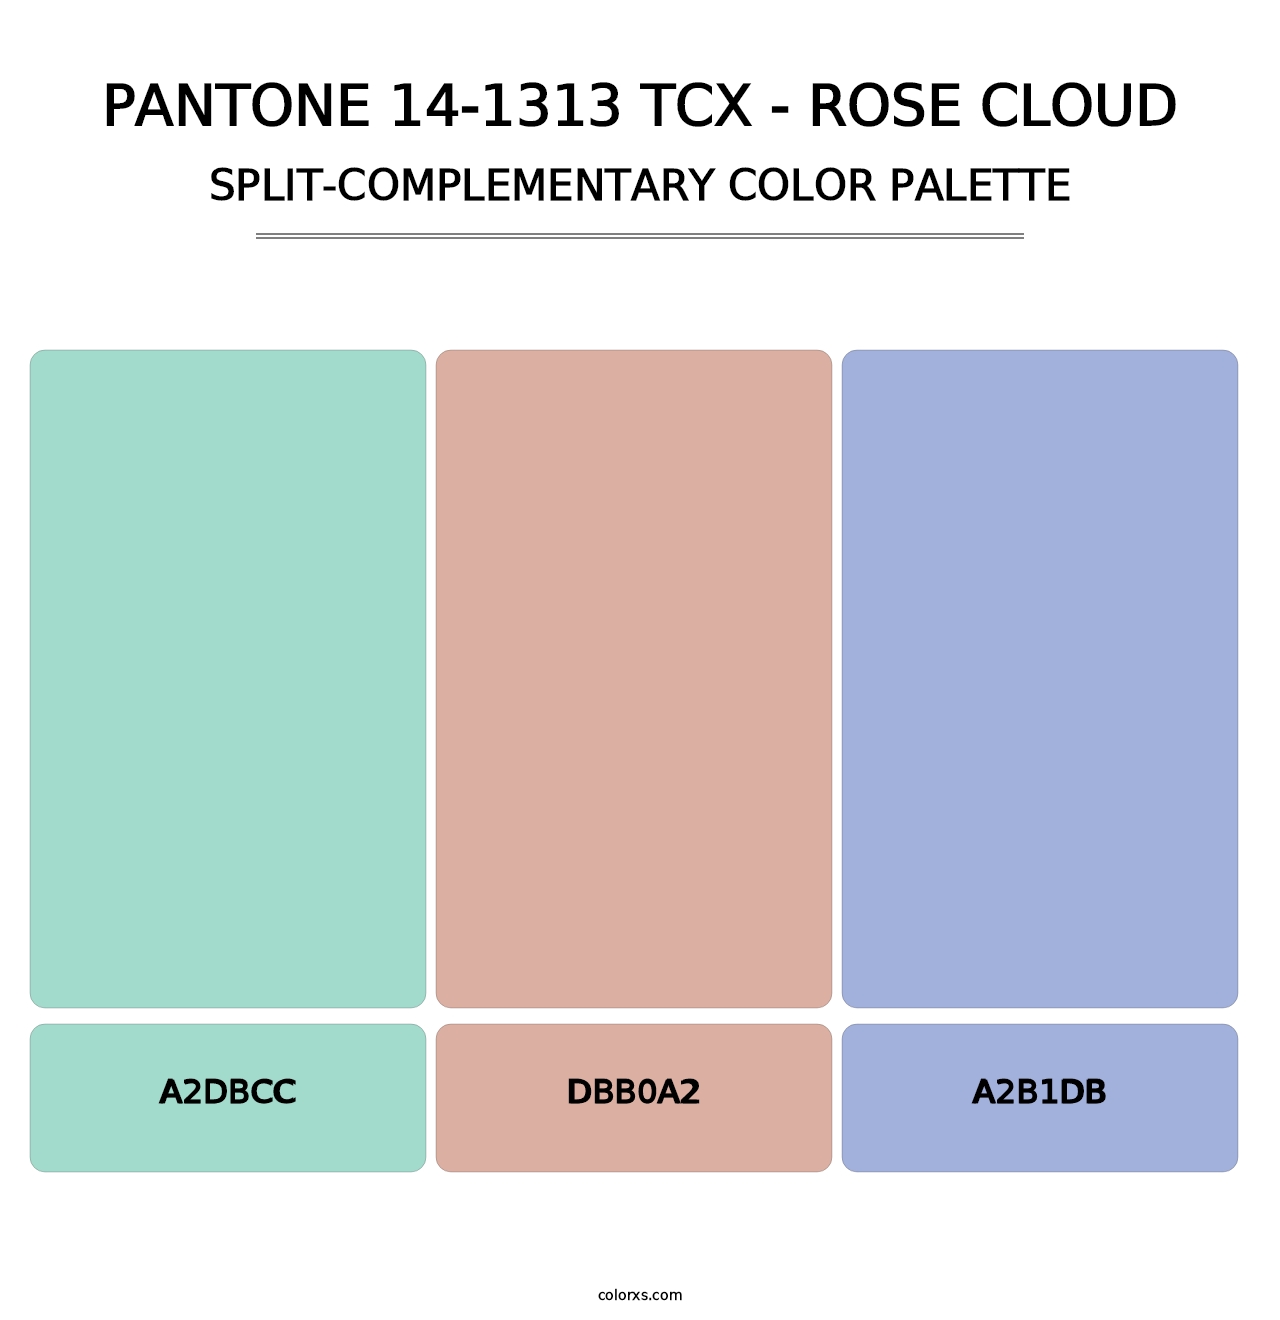 PANTONE 14-1313 TCX - Rose Cloud - Split-Complementary Color Palette